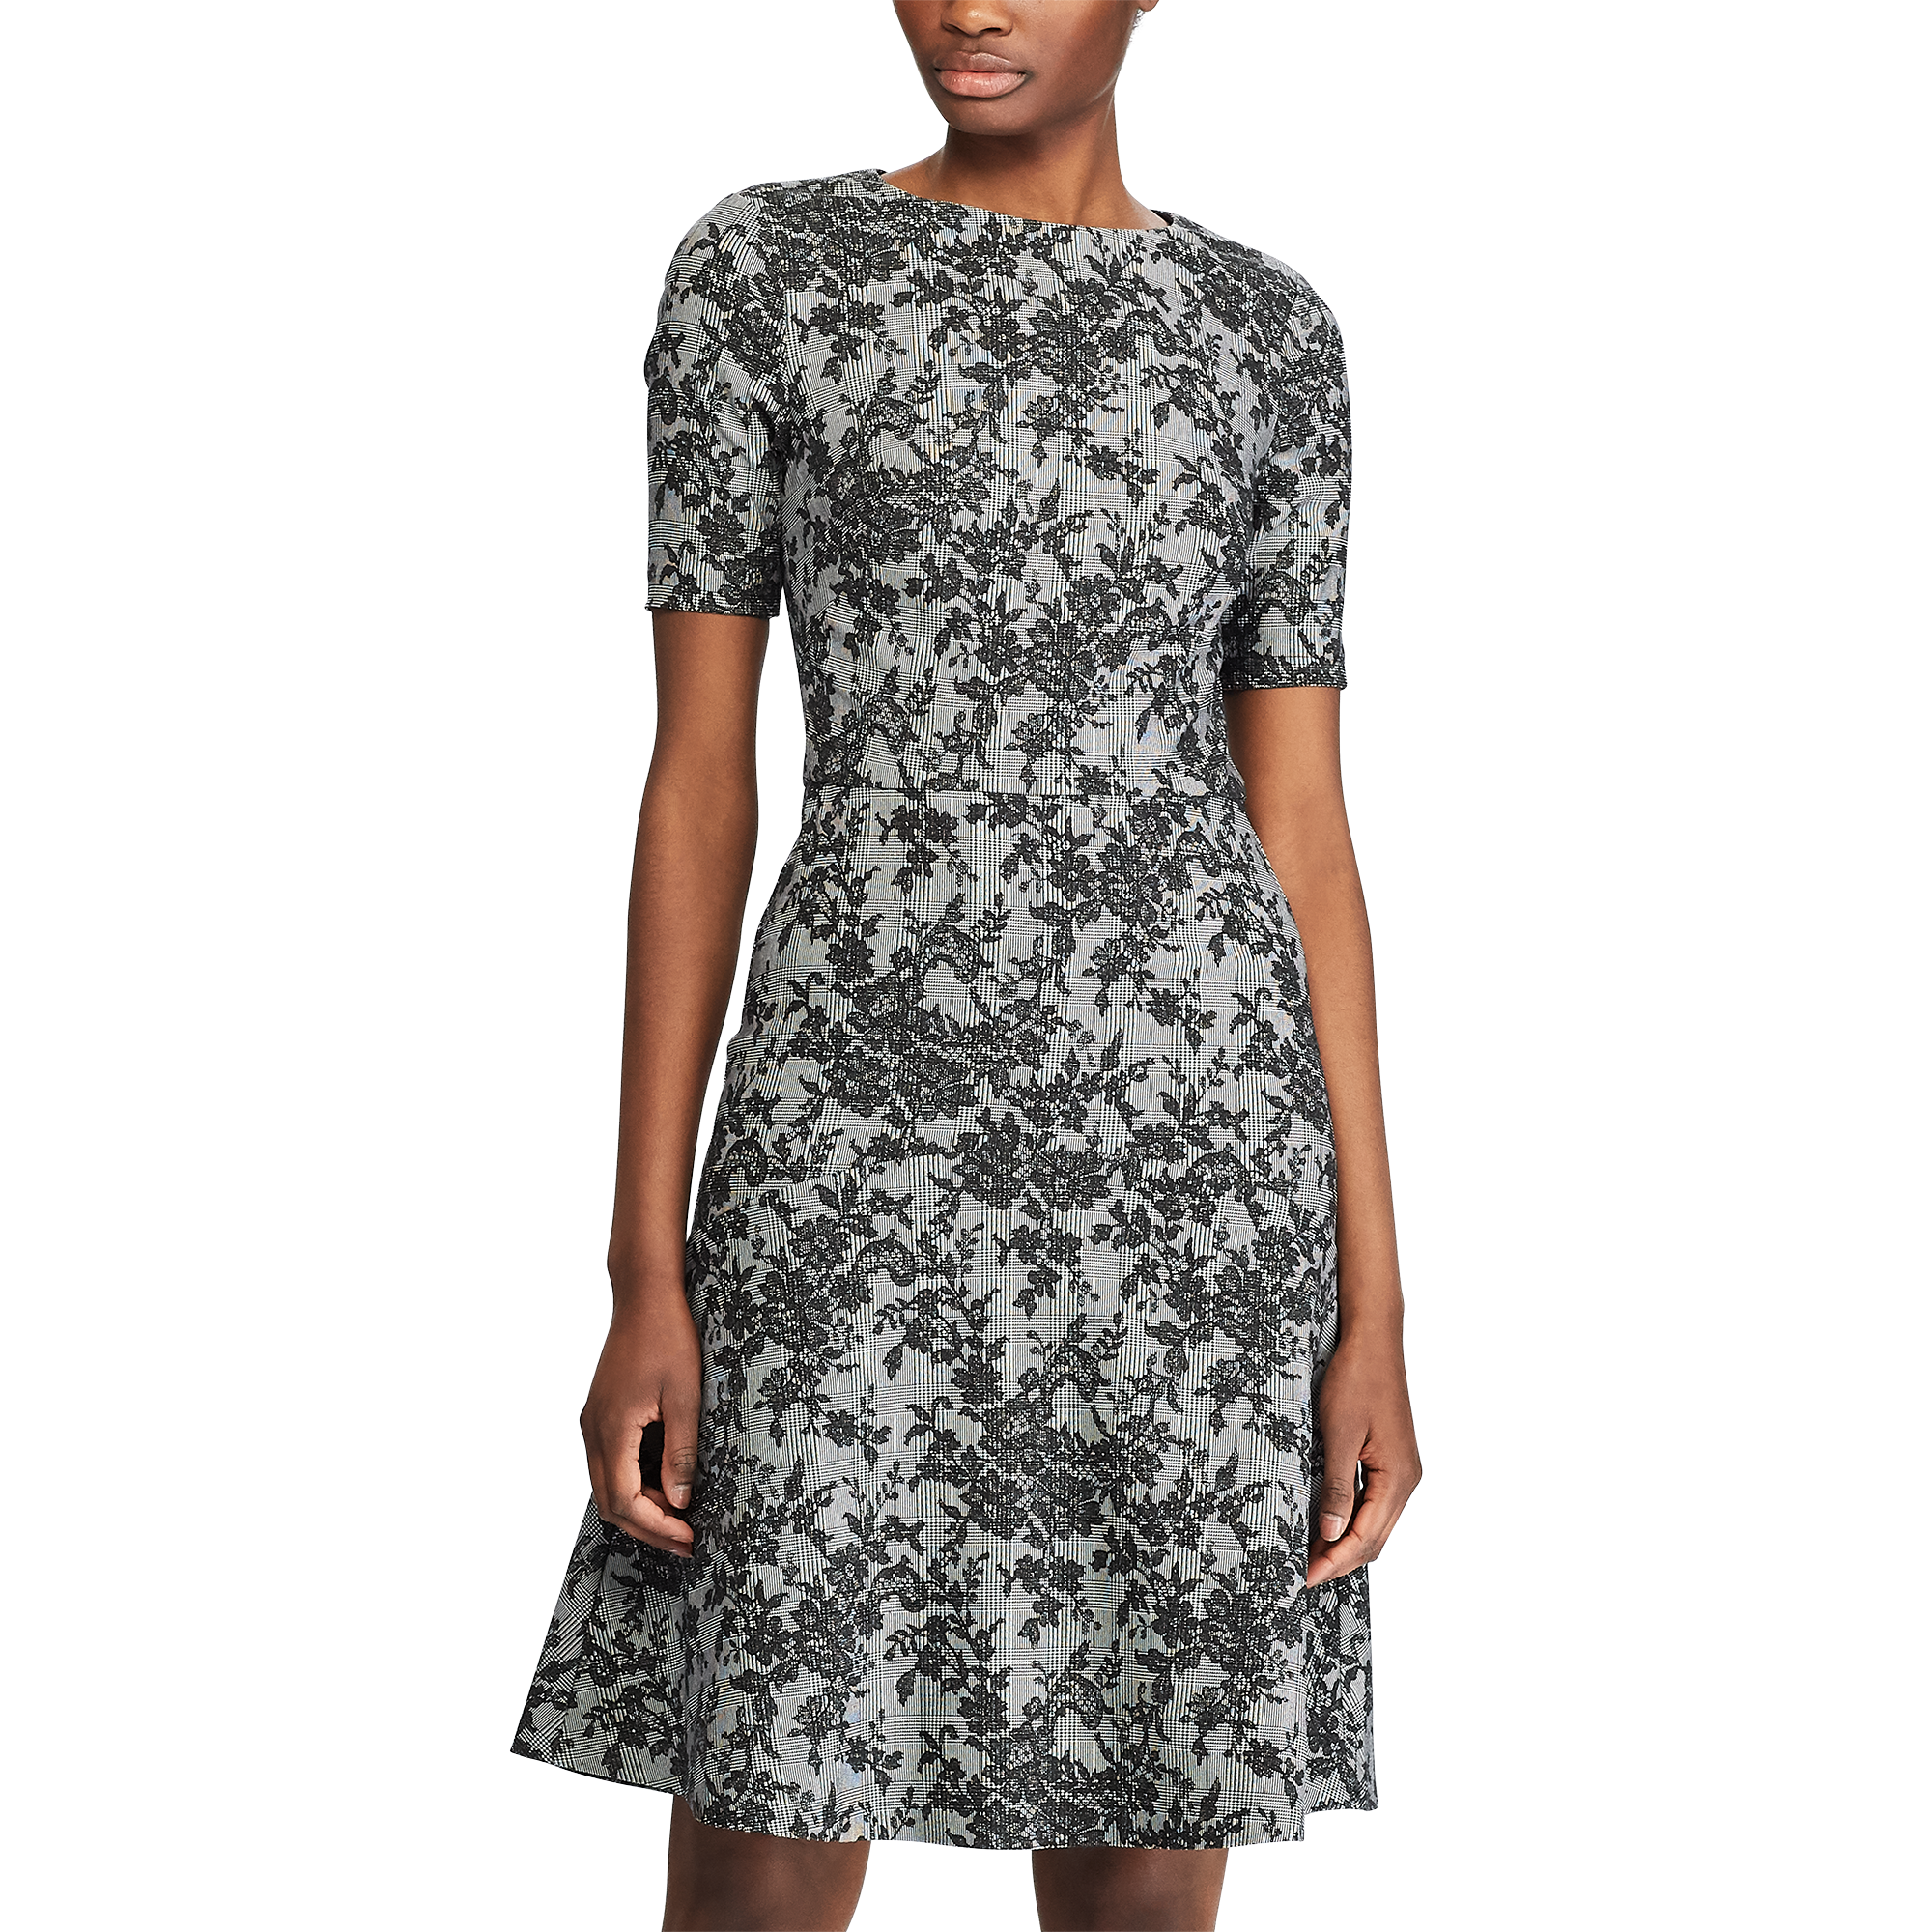 Ralph Lauren Floral Short-Sleeve Dress. 3